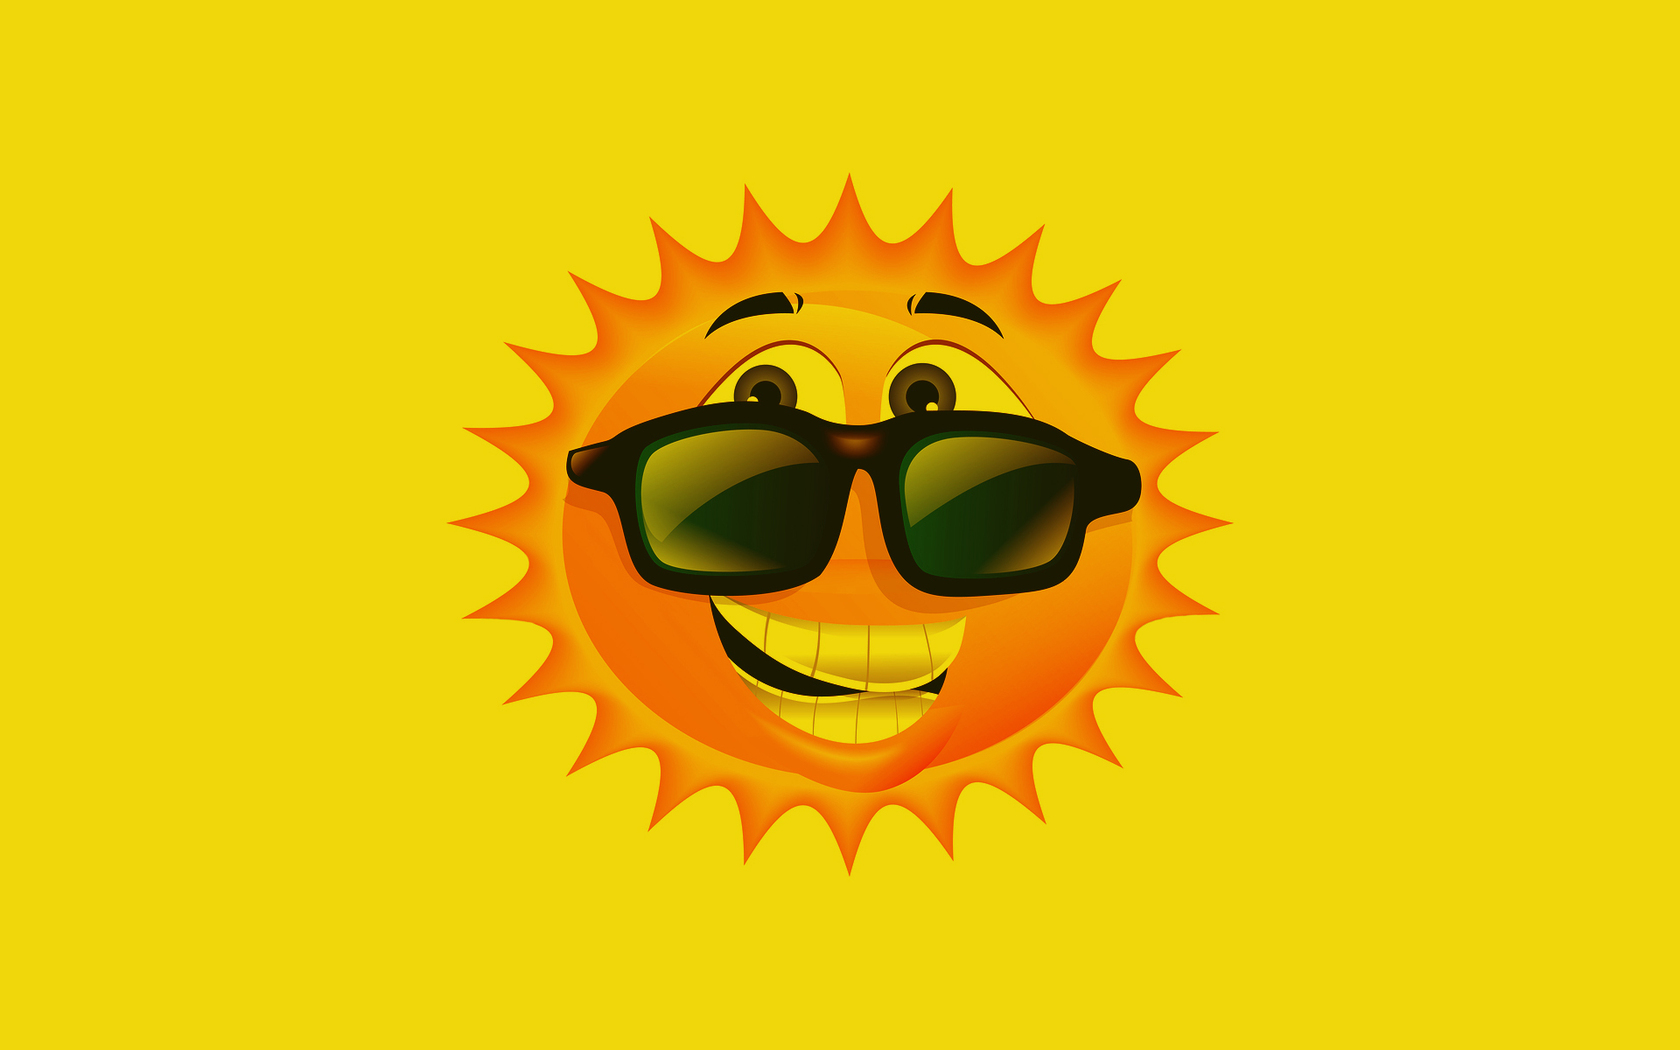 Summer Sun Cartoon Wallpapers - 1680x1050 - 329685